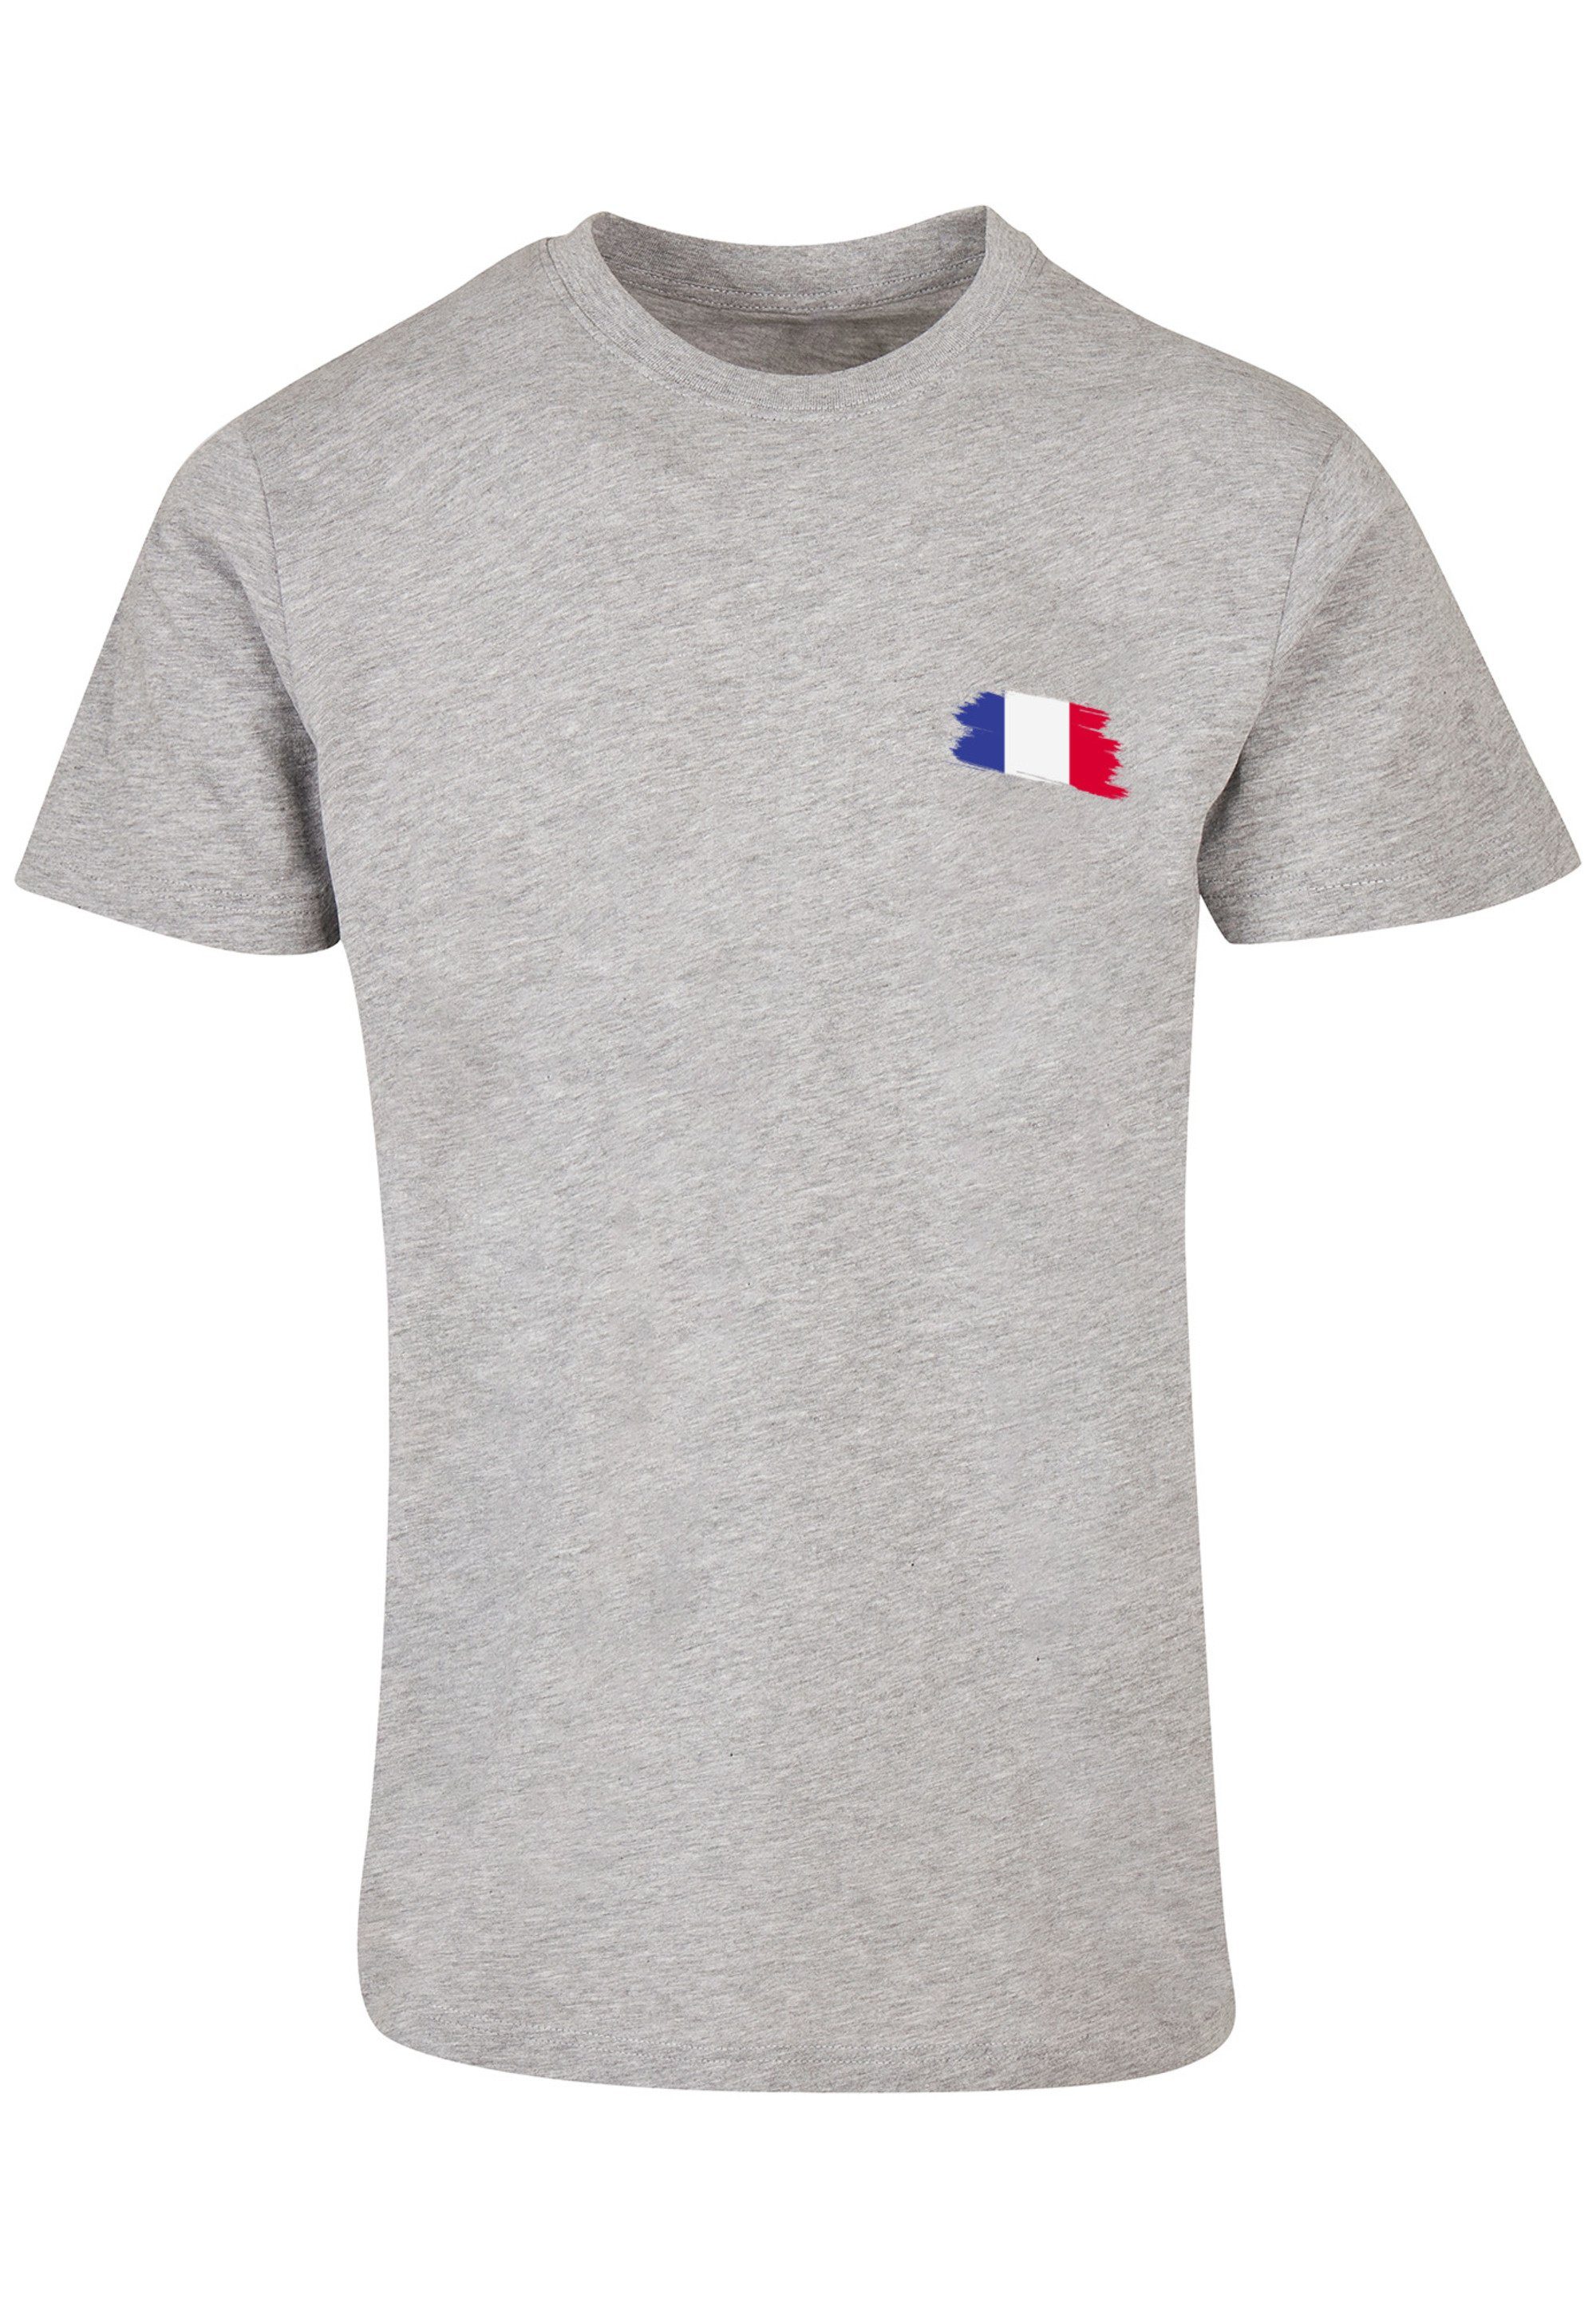 F4NT4STIC T-Shirt Frankreich Print heather grey Flagge France